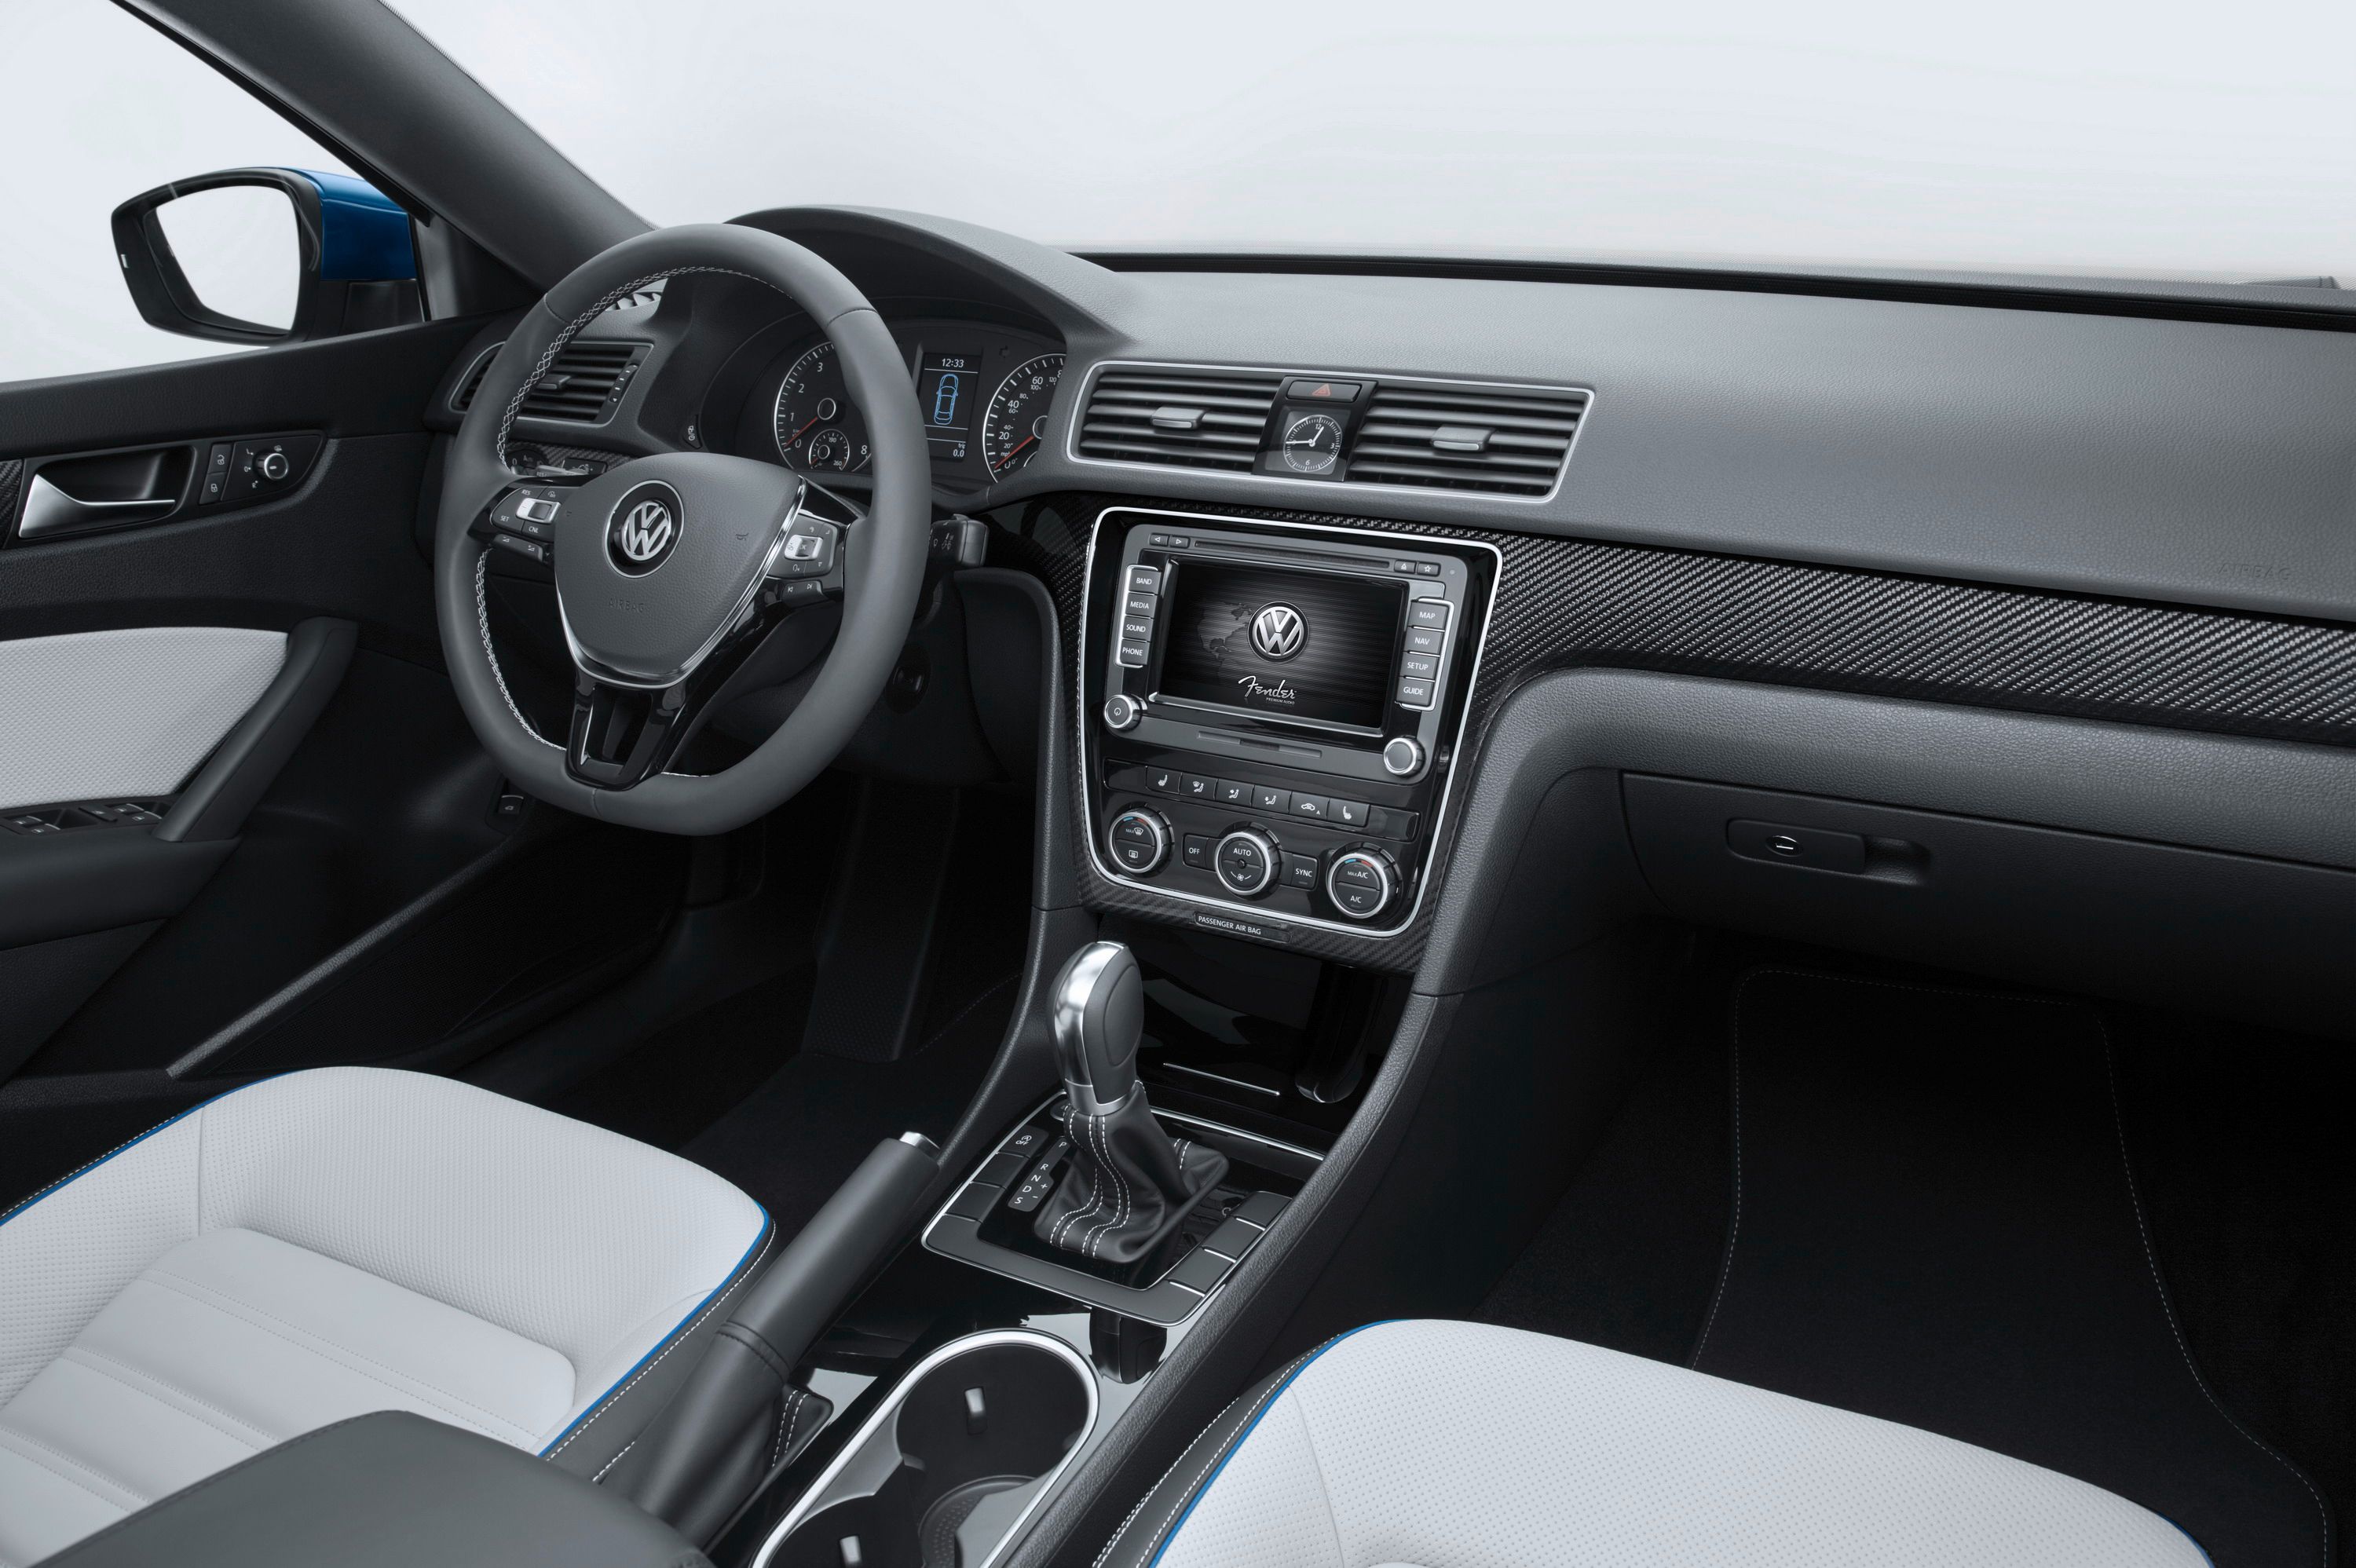 2014 Volkswagen Passat BlueMotion Concept